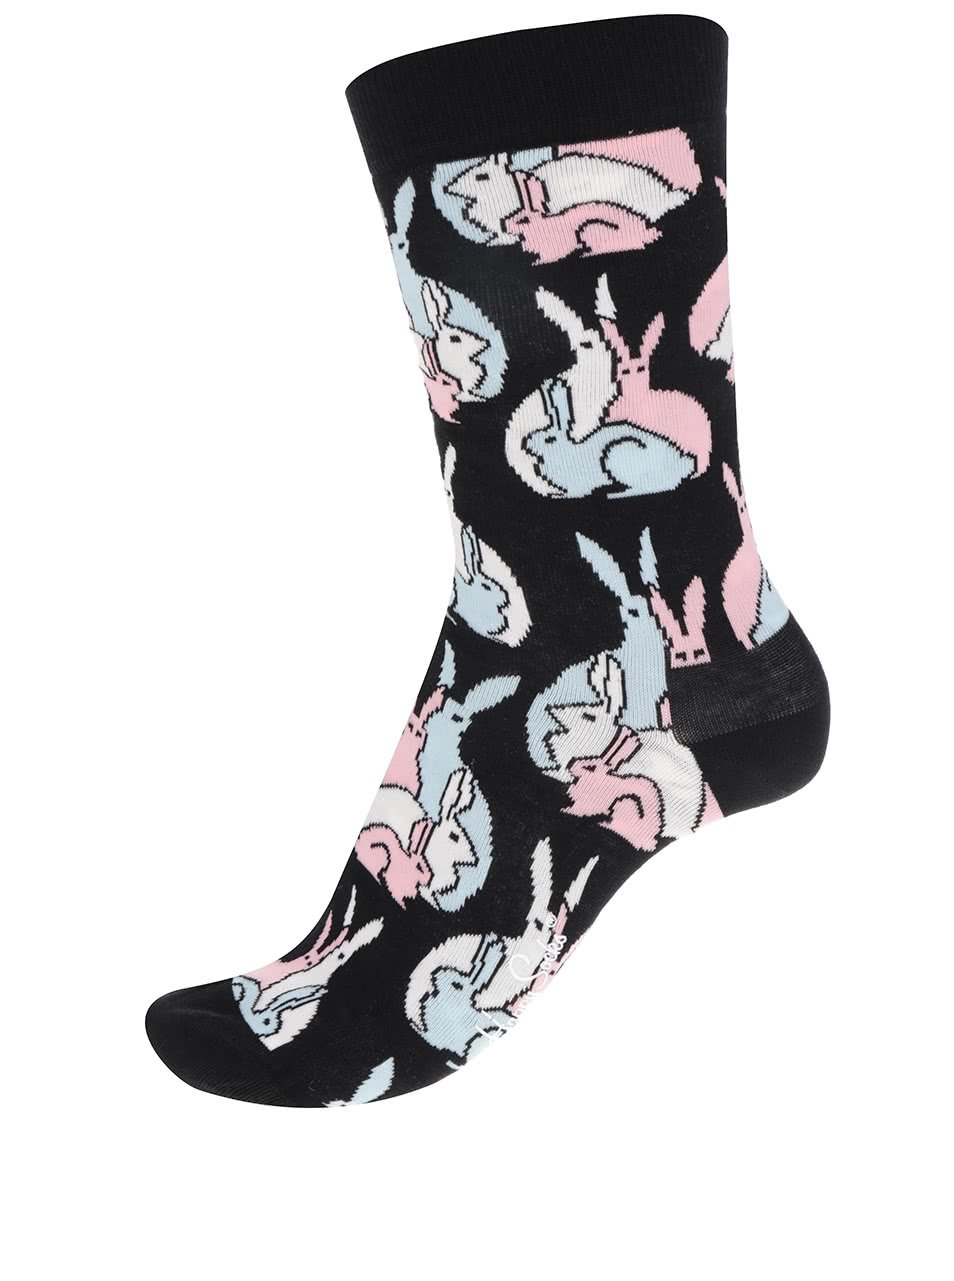 Černé dámské ponožky s motivem zajíců Iris Apfel Bunny Sock